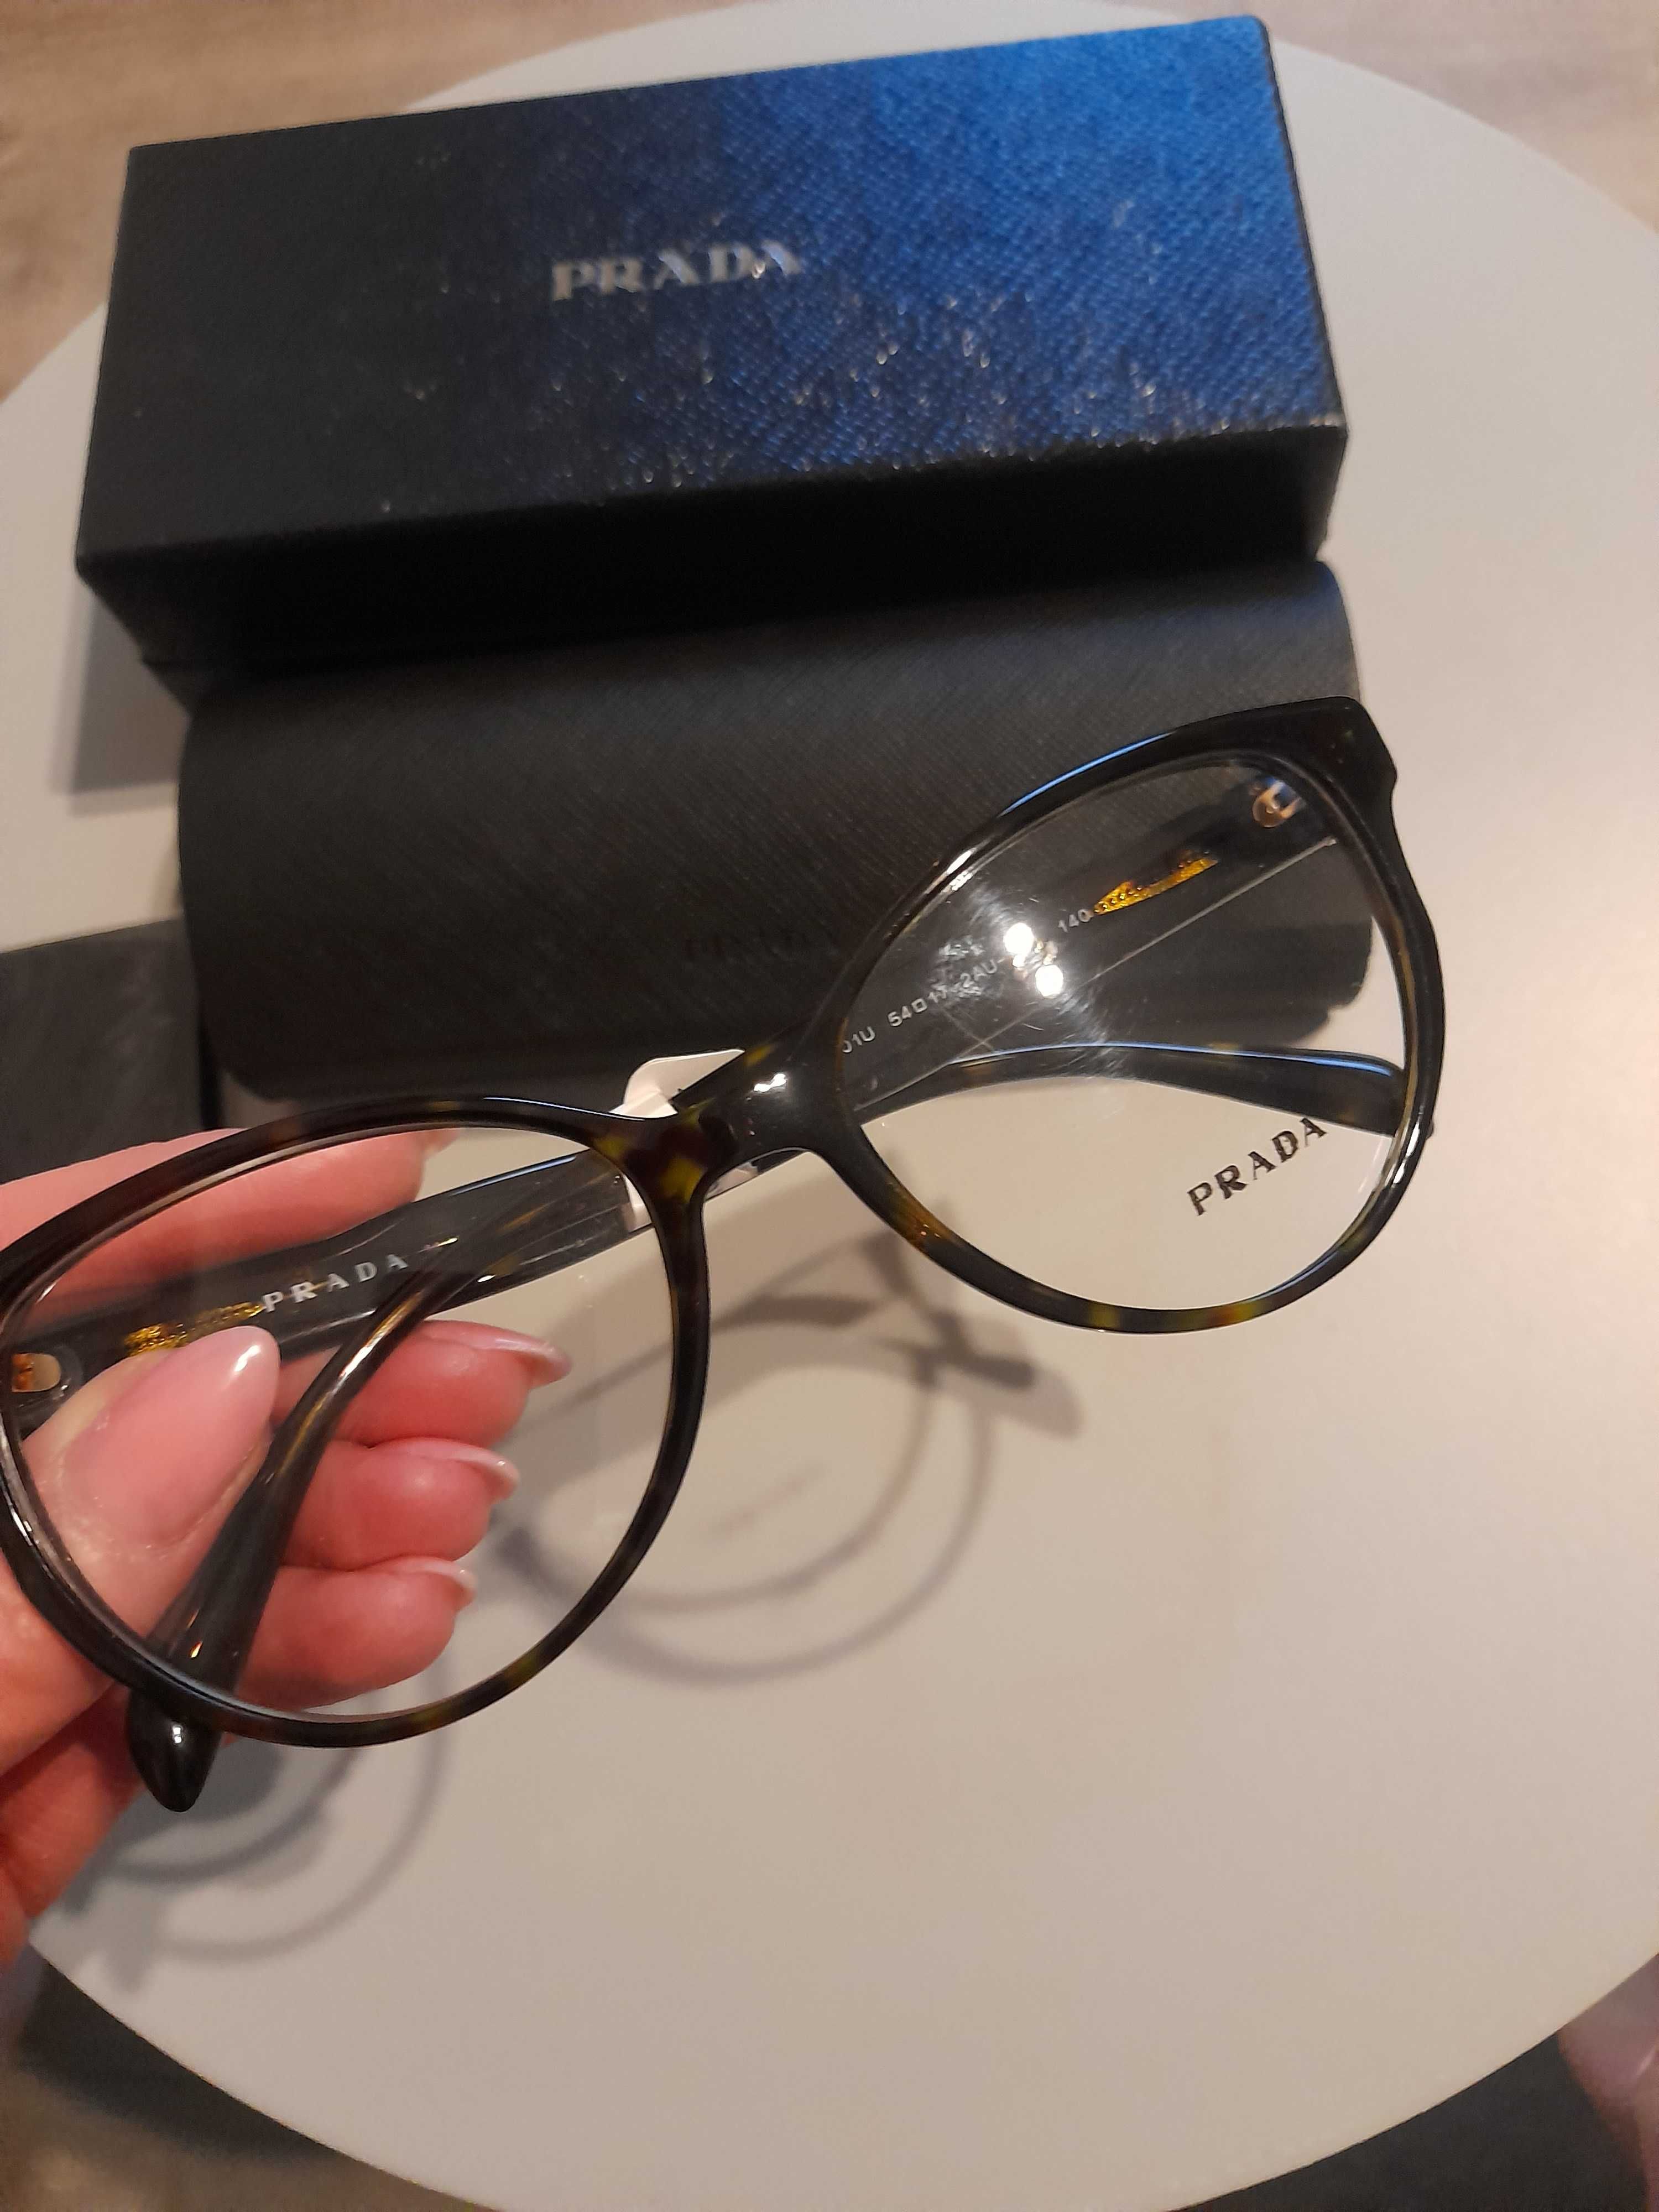 Nowe z metką oprawy prada korekcyjne okulary braz